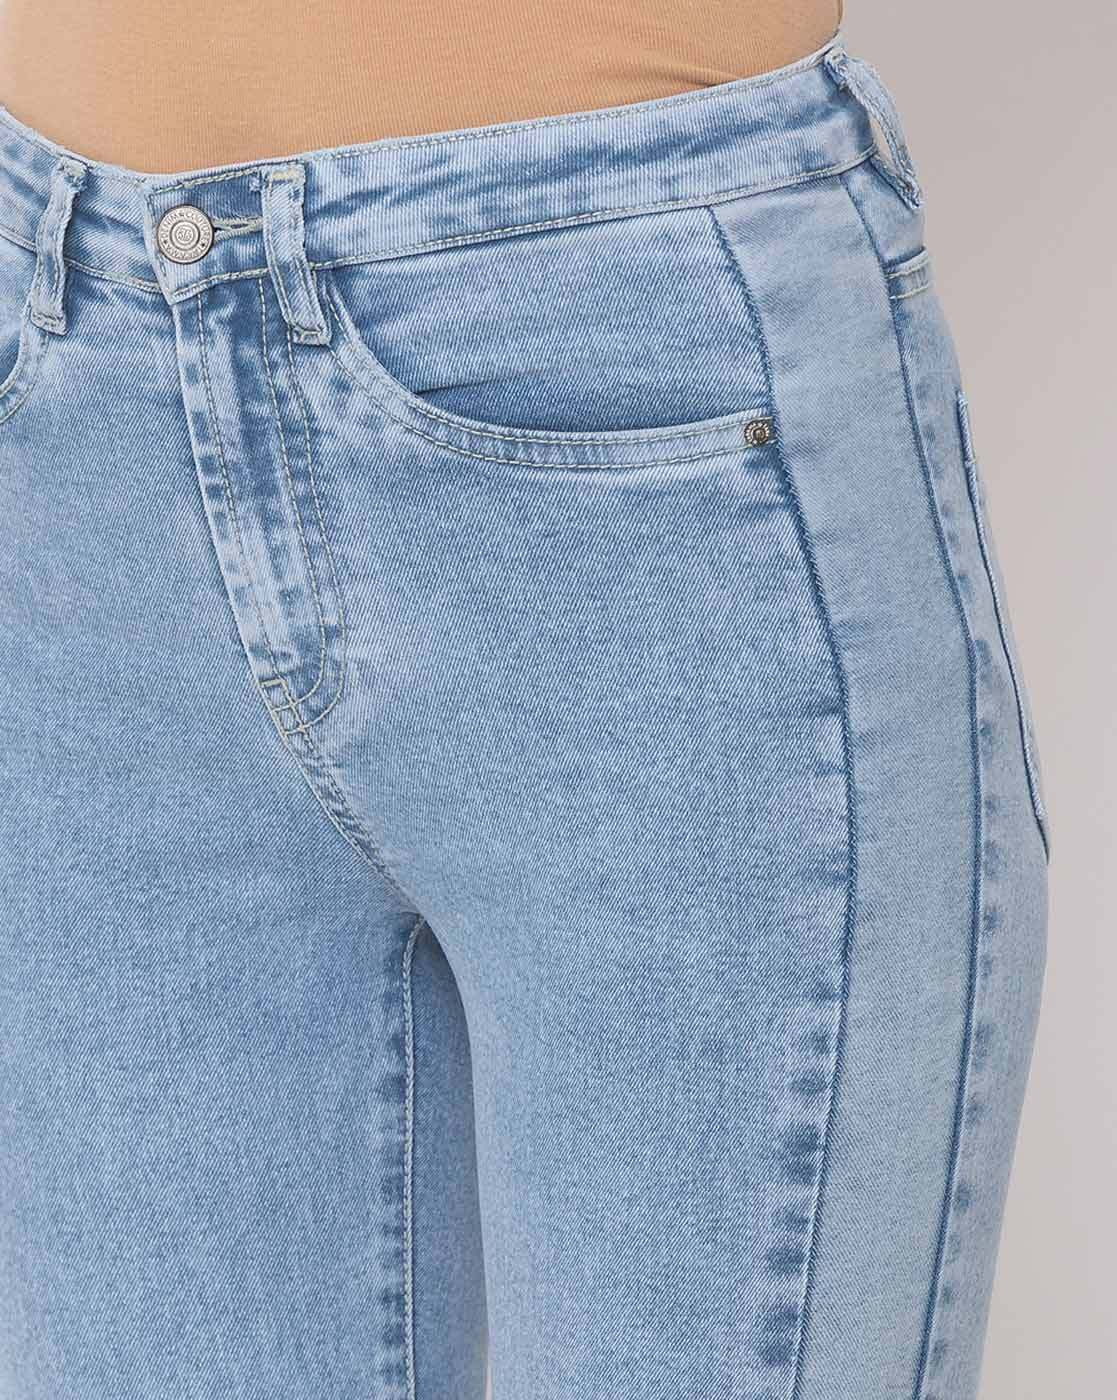 Buy Light Blue Jeans & Jeggings for Women by TARAMA Online